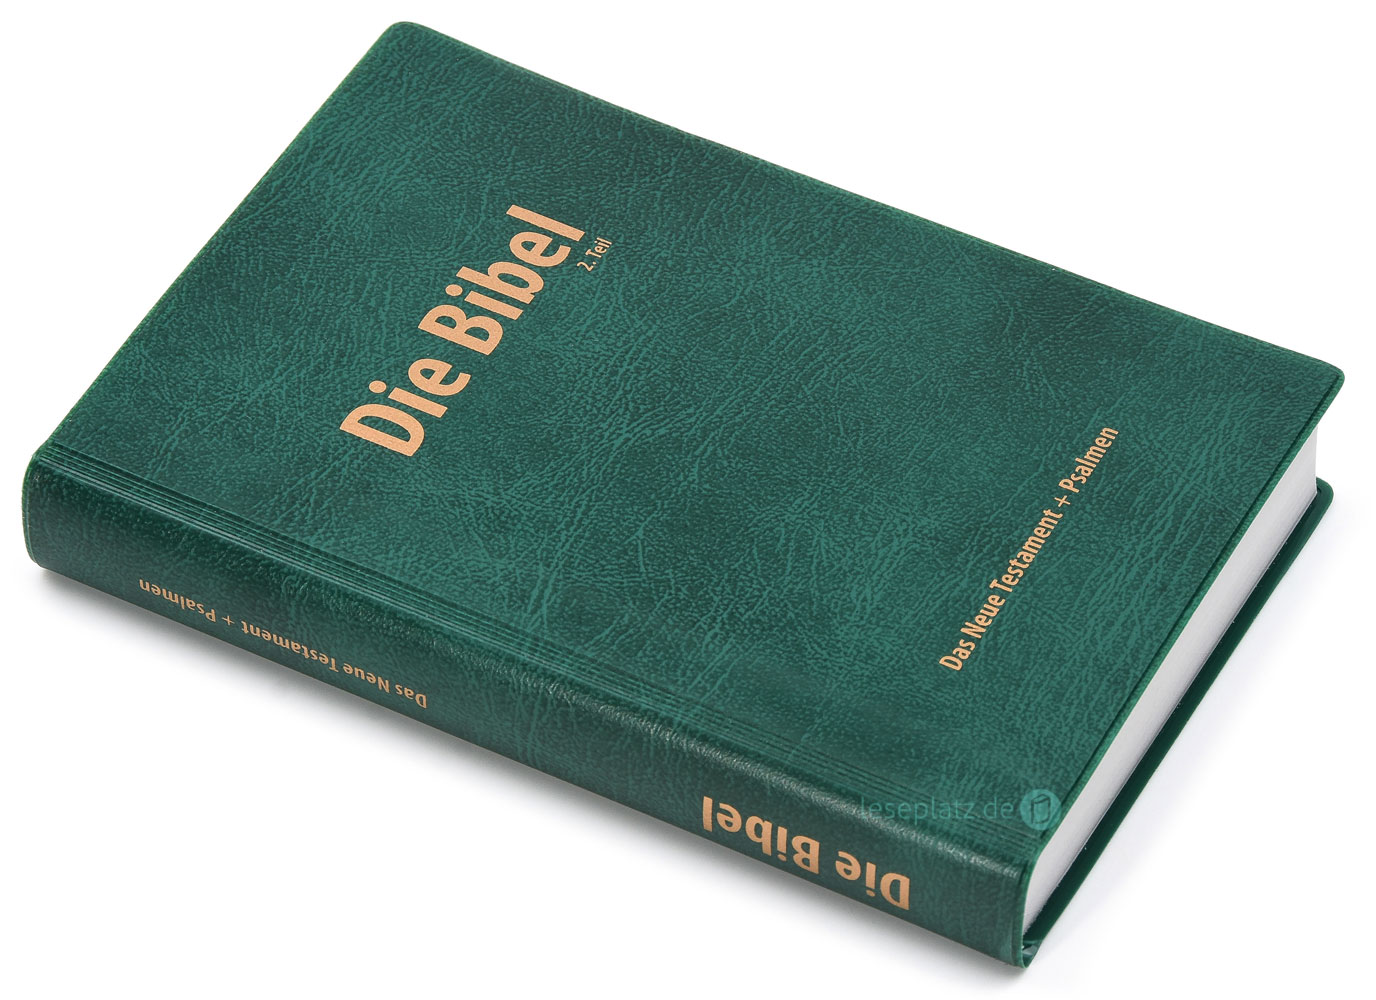 Elberfelder 2003 - Das Neue Testament und die Psalmen